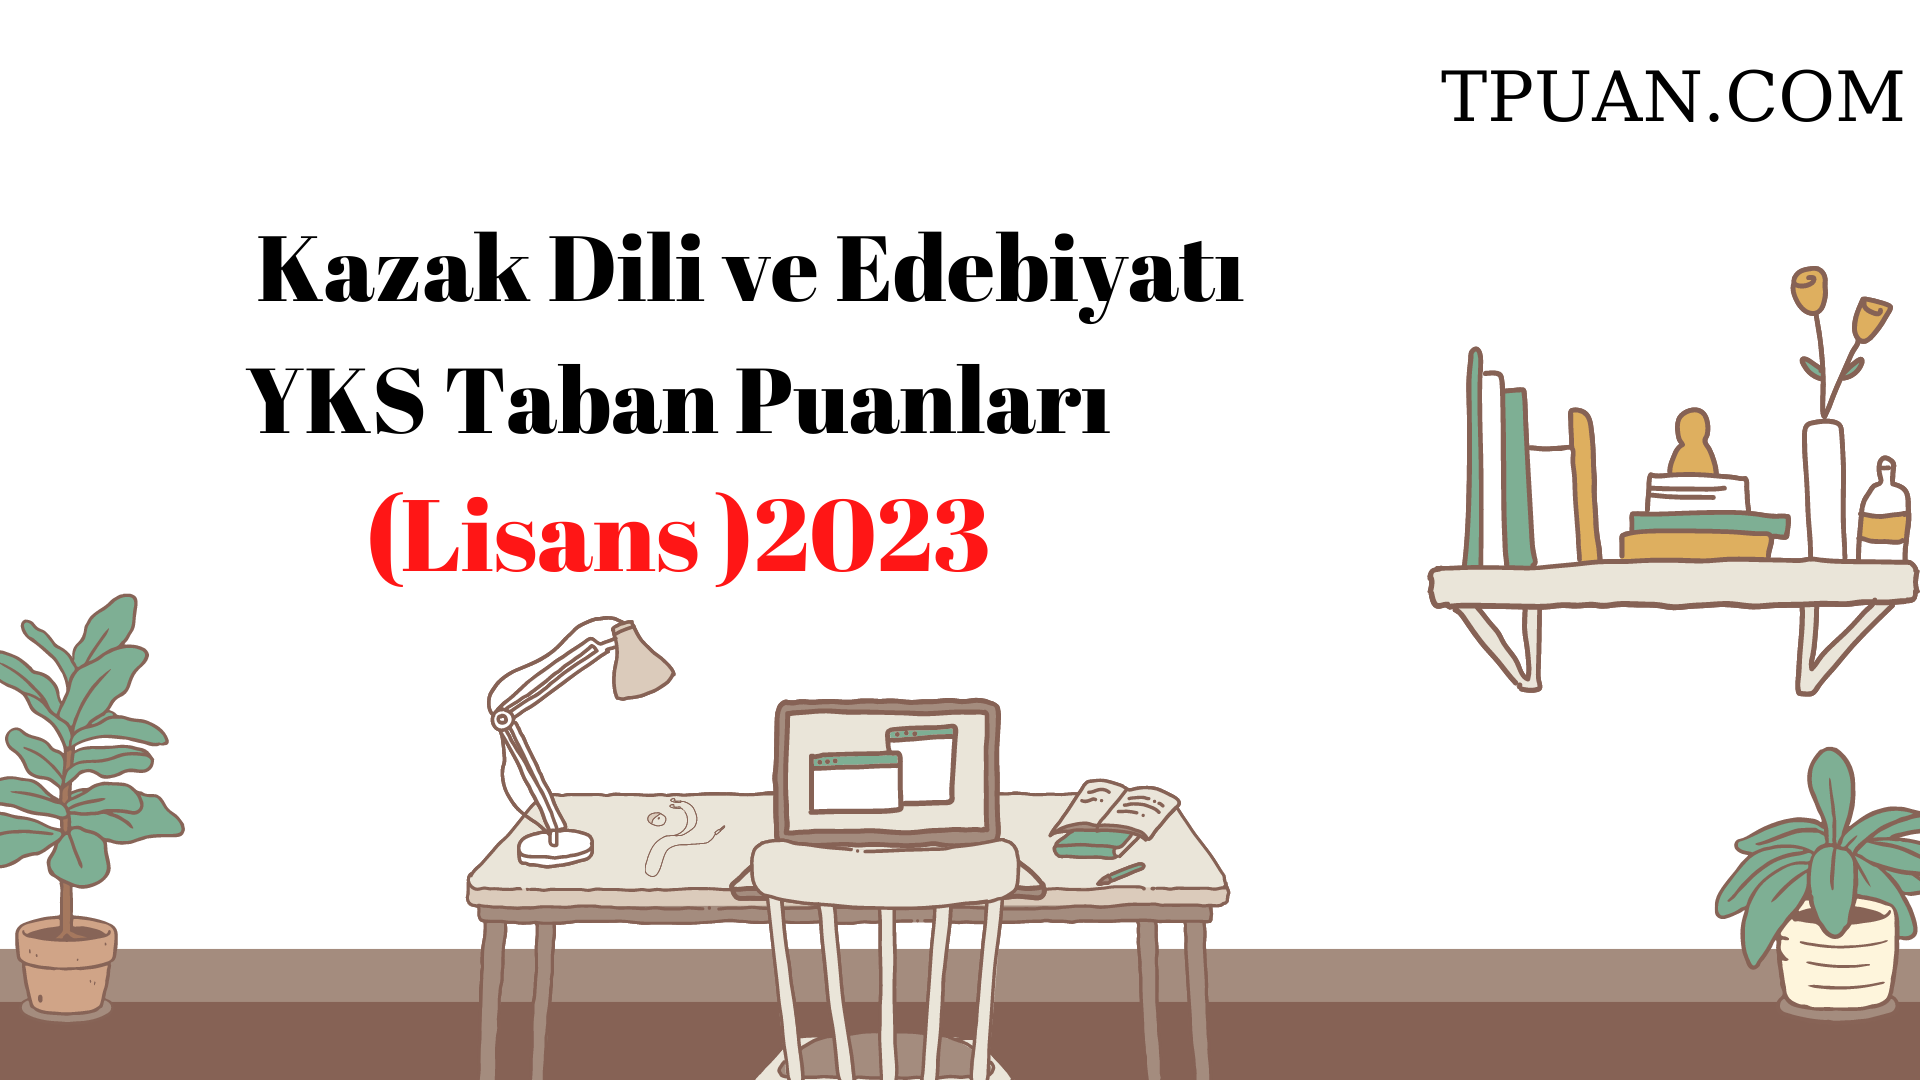  Kazak Dili ve Edebiyatı Bölümü YKS Taban Puanları (4 Yıllık) 2023